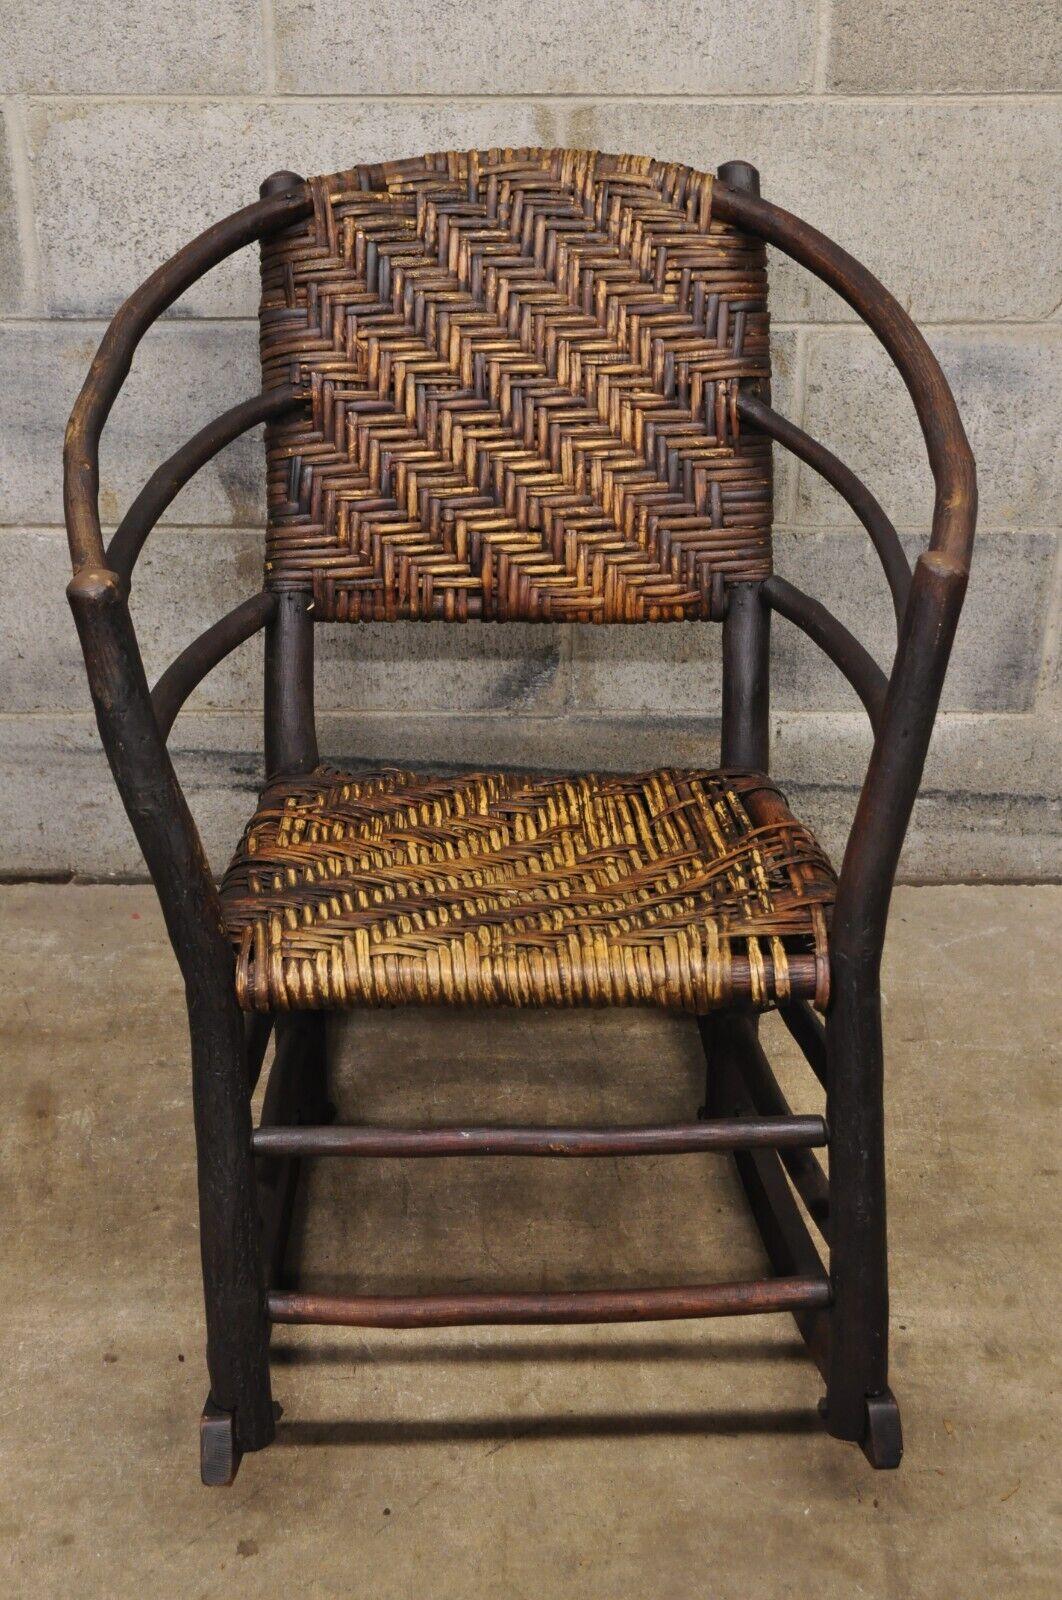 Vieille chaise à bascule Adirondack en rotin avec cadre en bois et branches d'arbre, style vieux hickory. Le dossier et l'assise sont en rotin tressé, le cadre est large, la construction en bois massif, la finition est vieillie, c'est un très bel